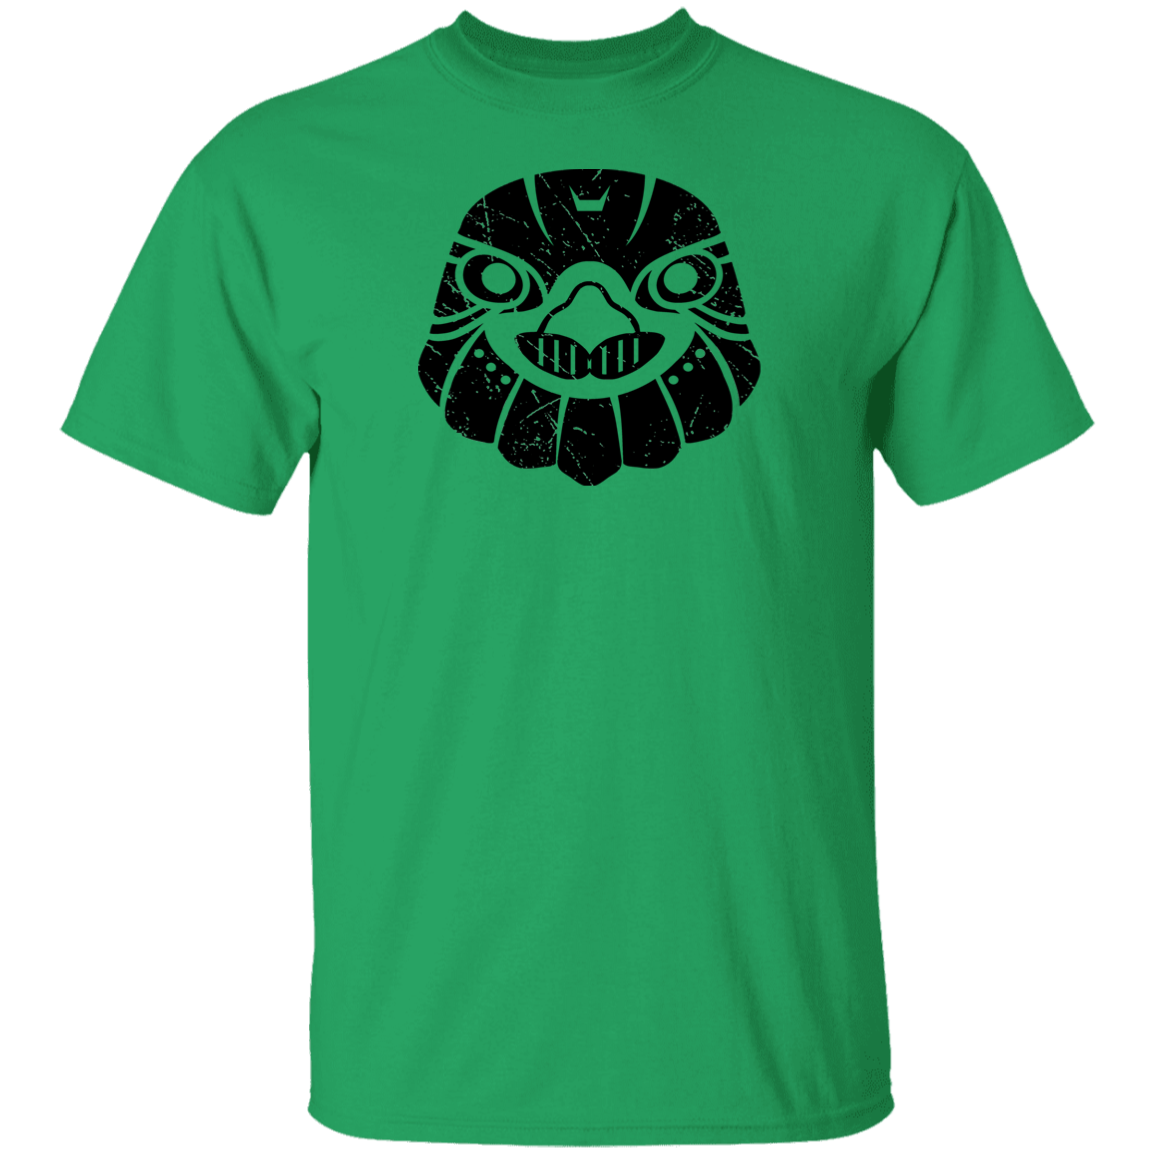 Black Distressed Emblem T-Shirt for Kids (Hawk/Talon)